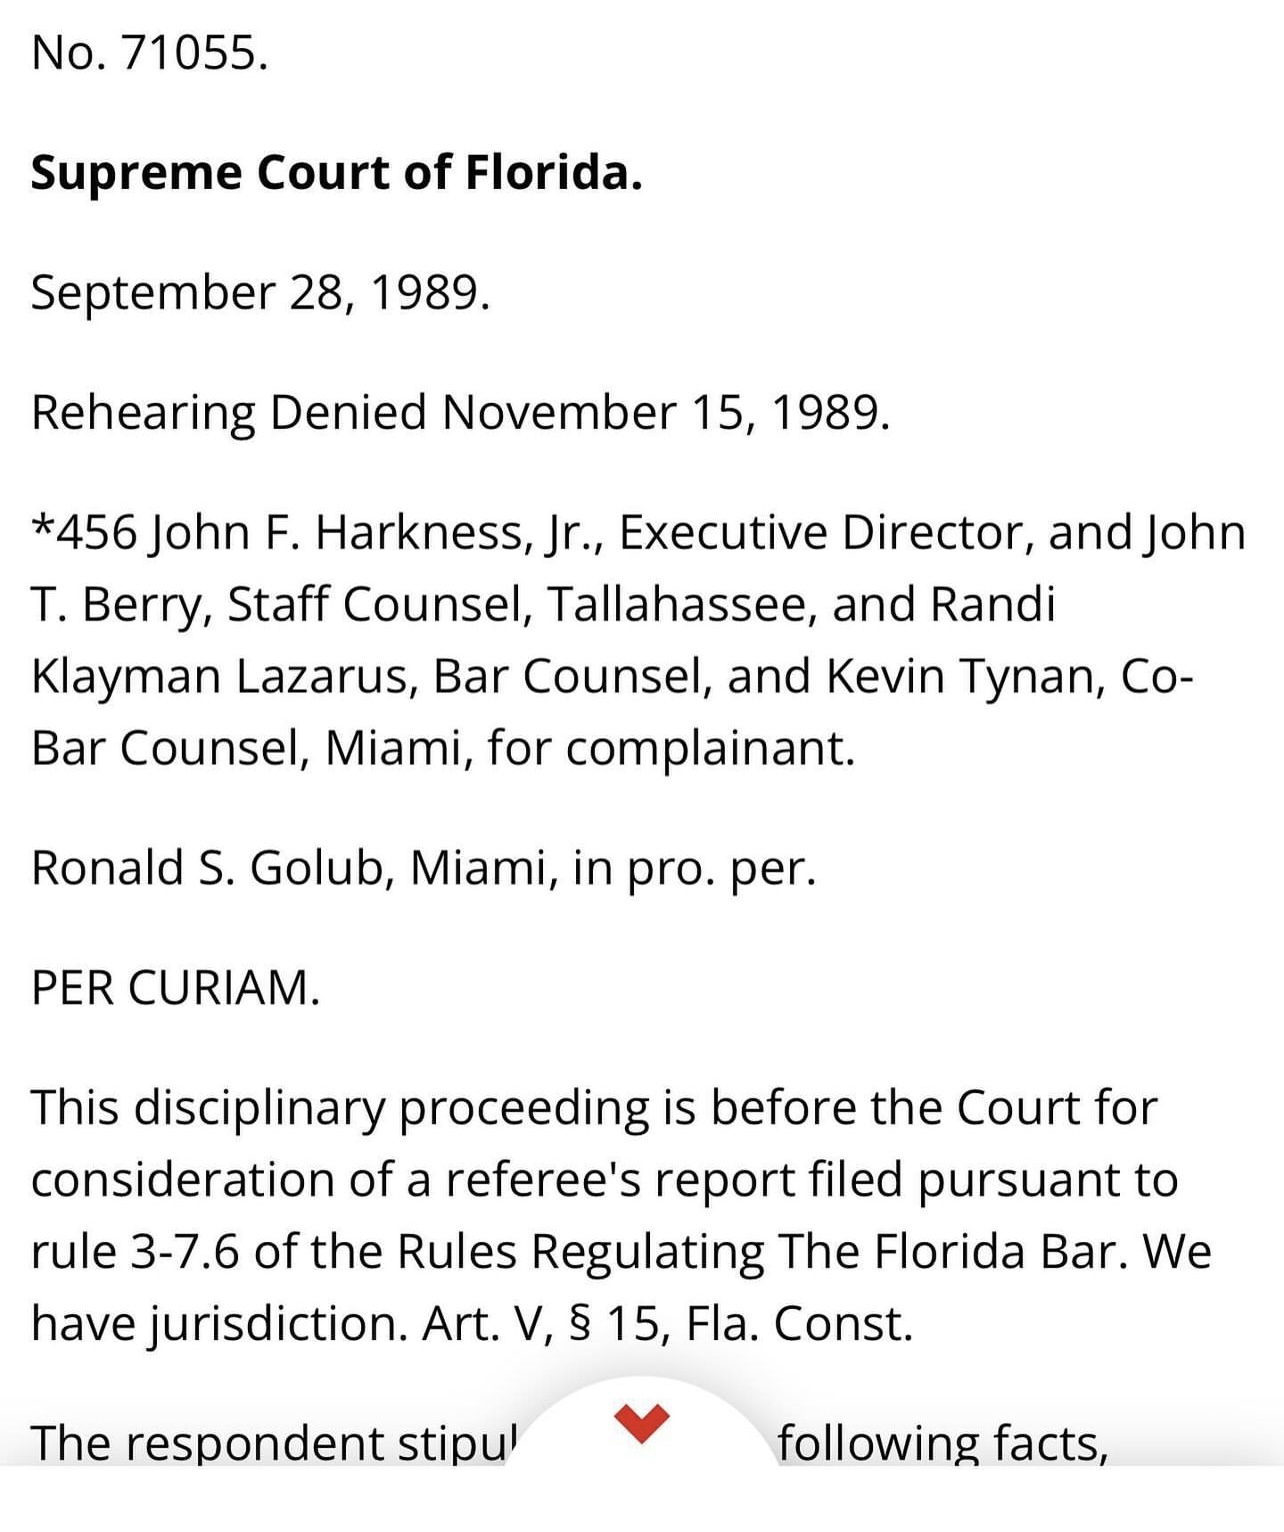 Kevin Tynan & Randi Lazarus' Case Bar Co-Counsels